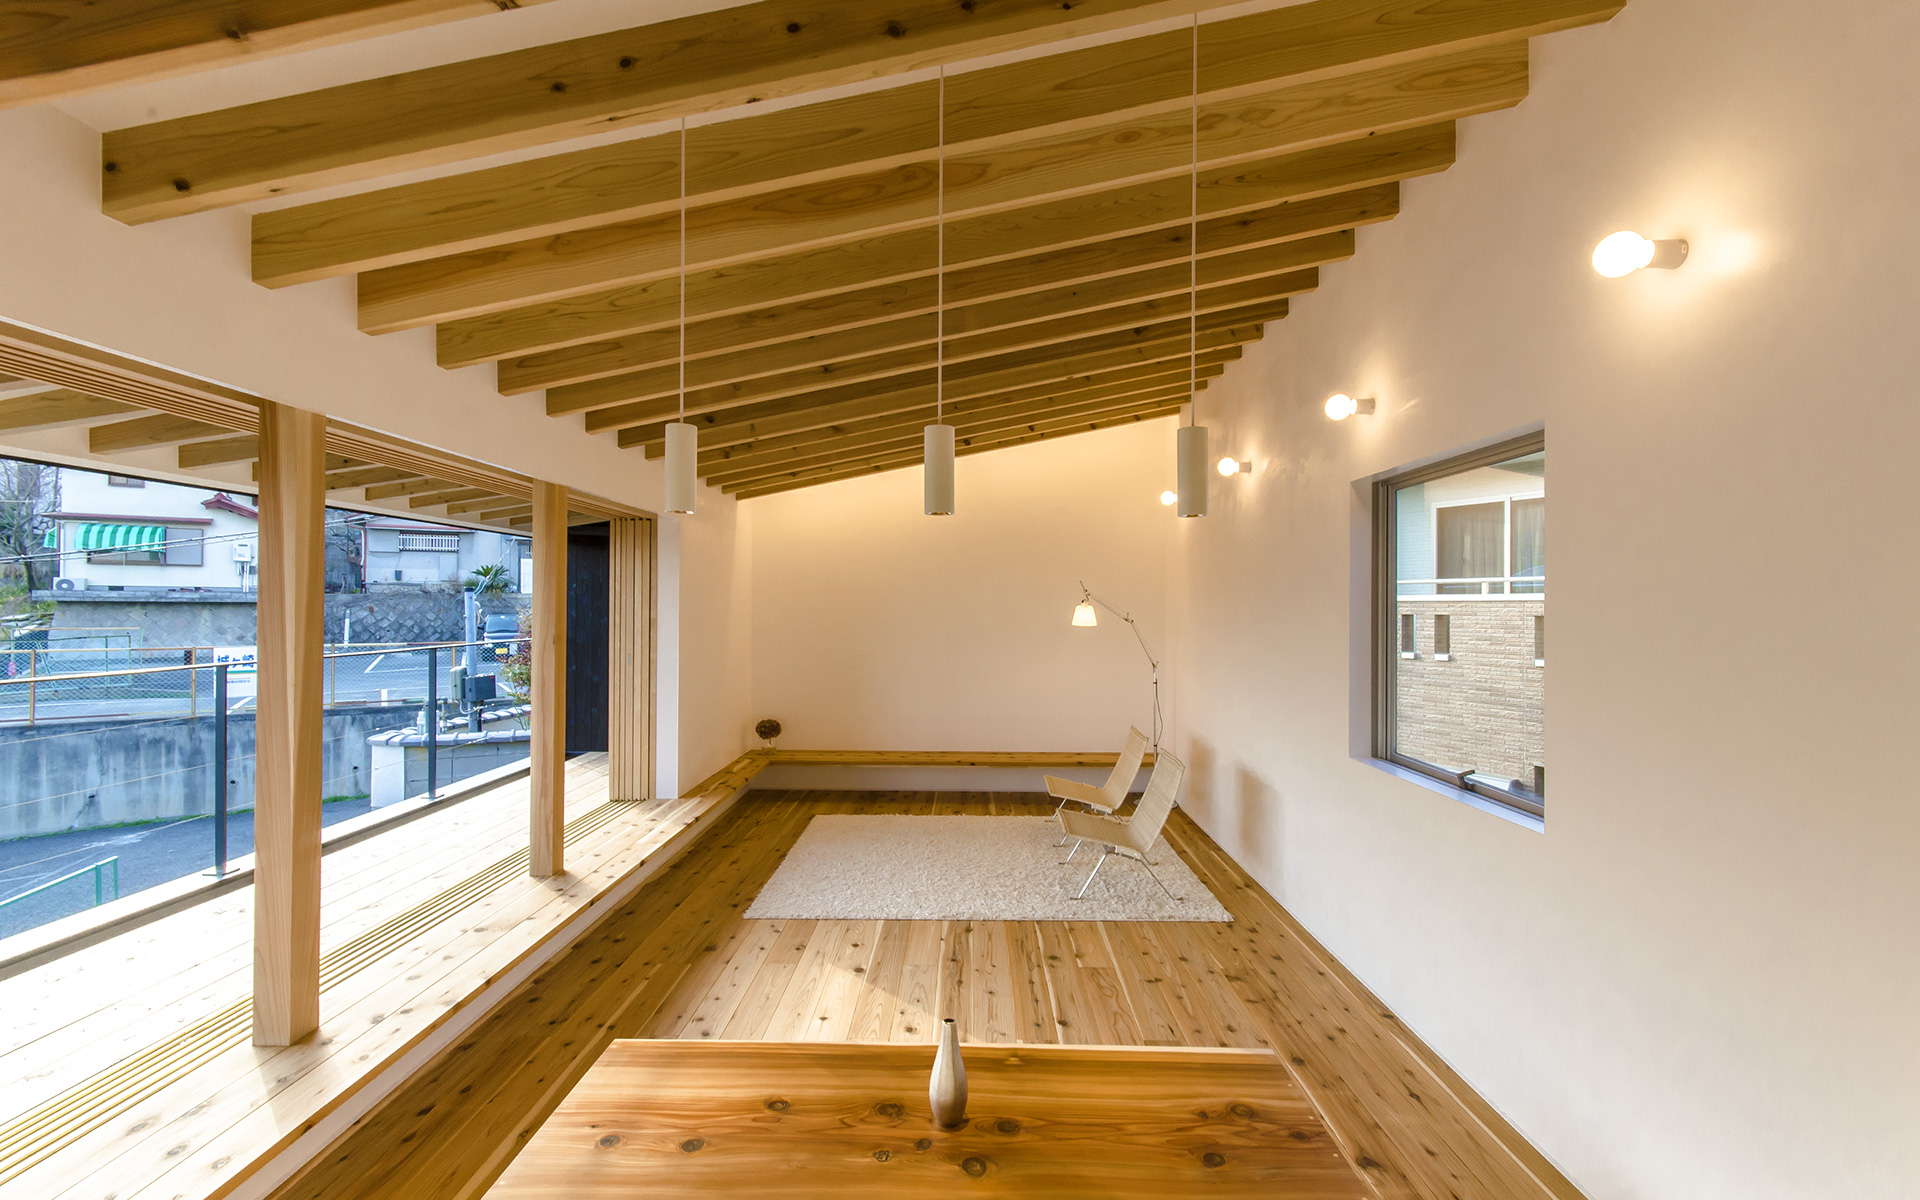 奈良県生駒市にある自然素材住宅の内観実例写真